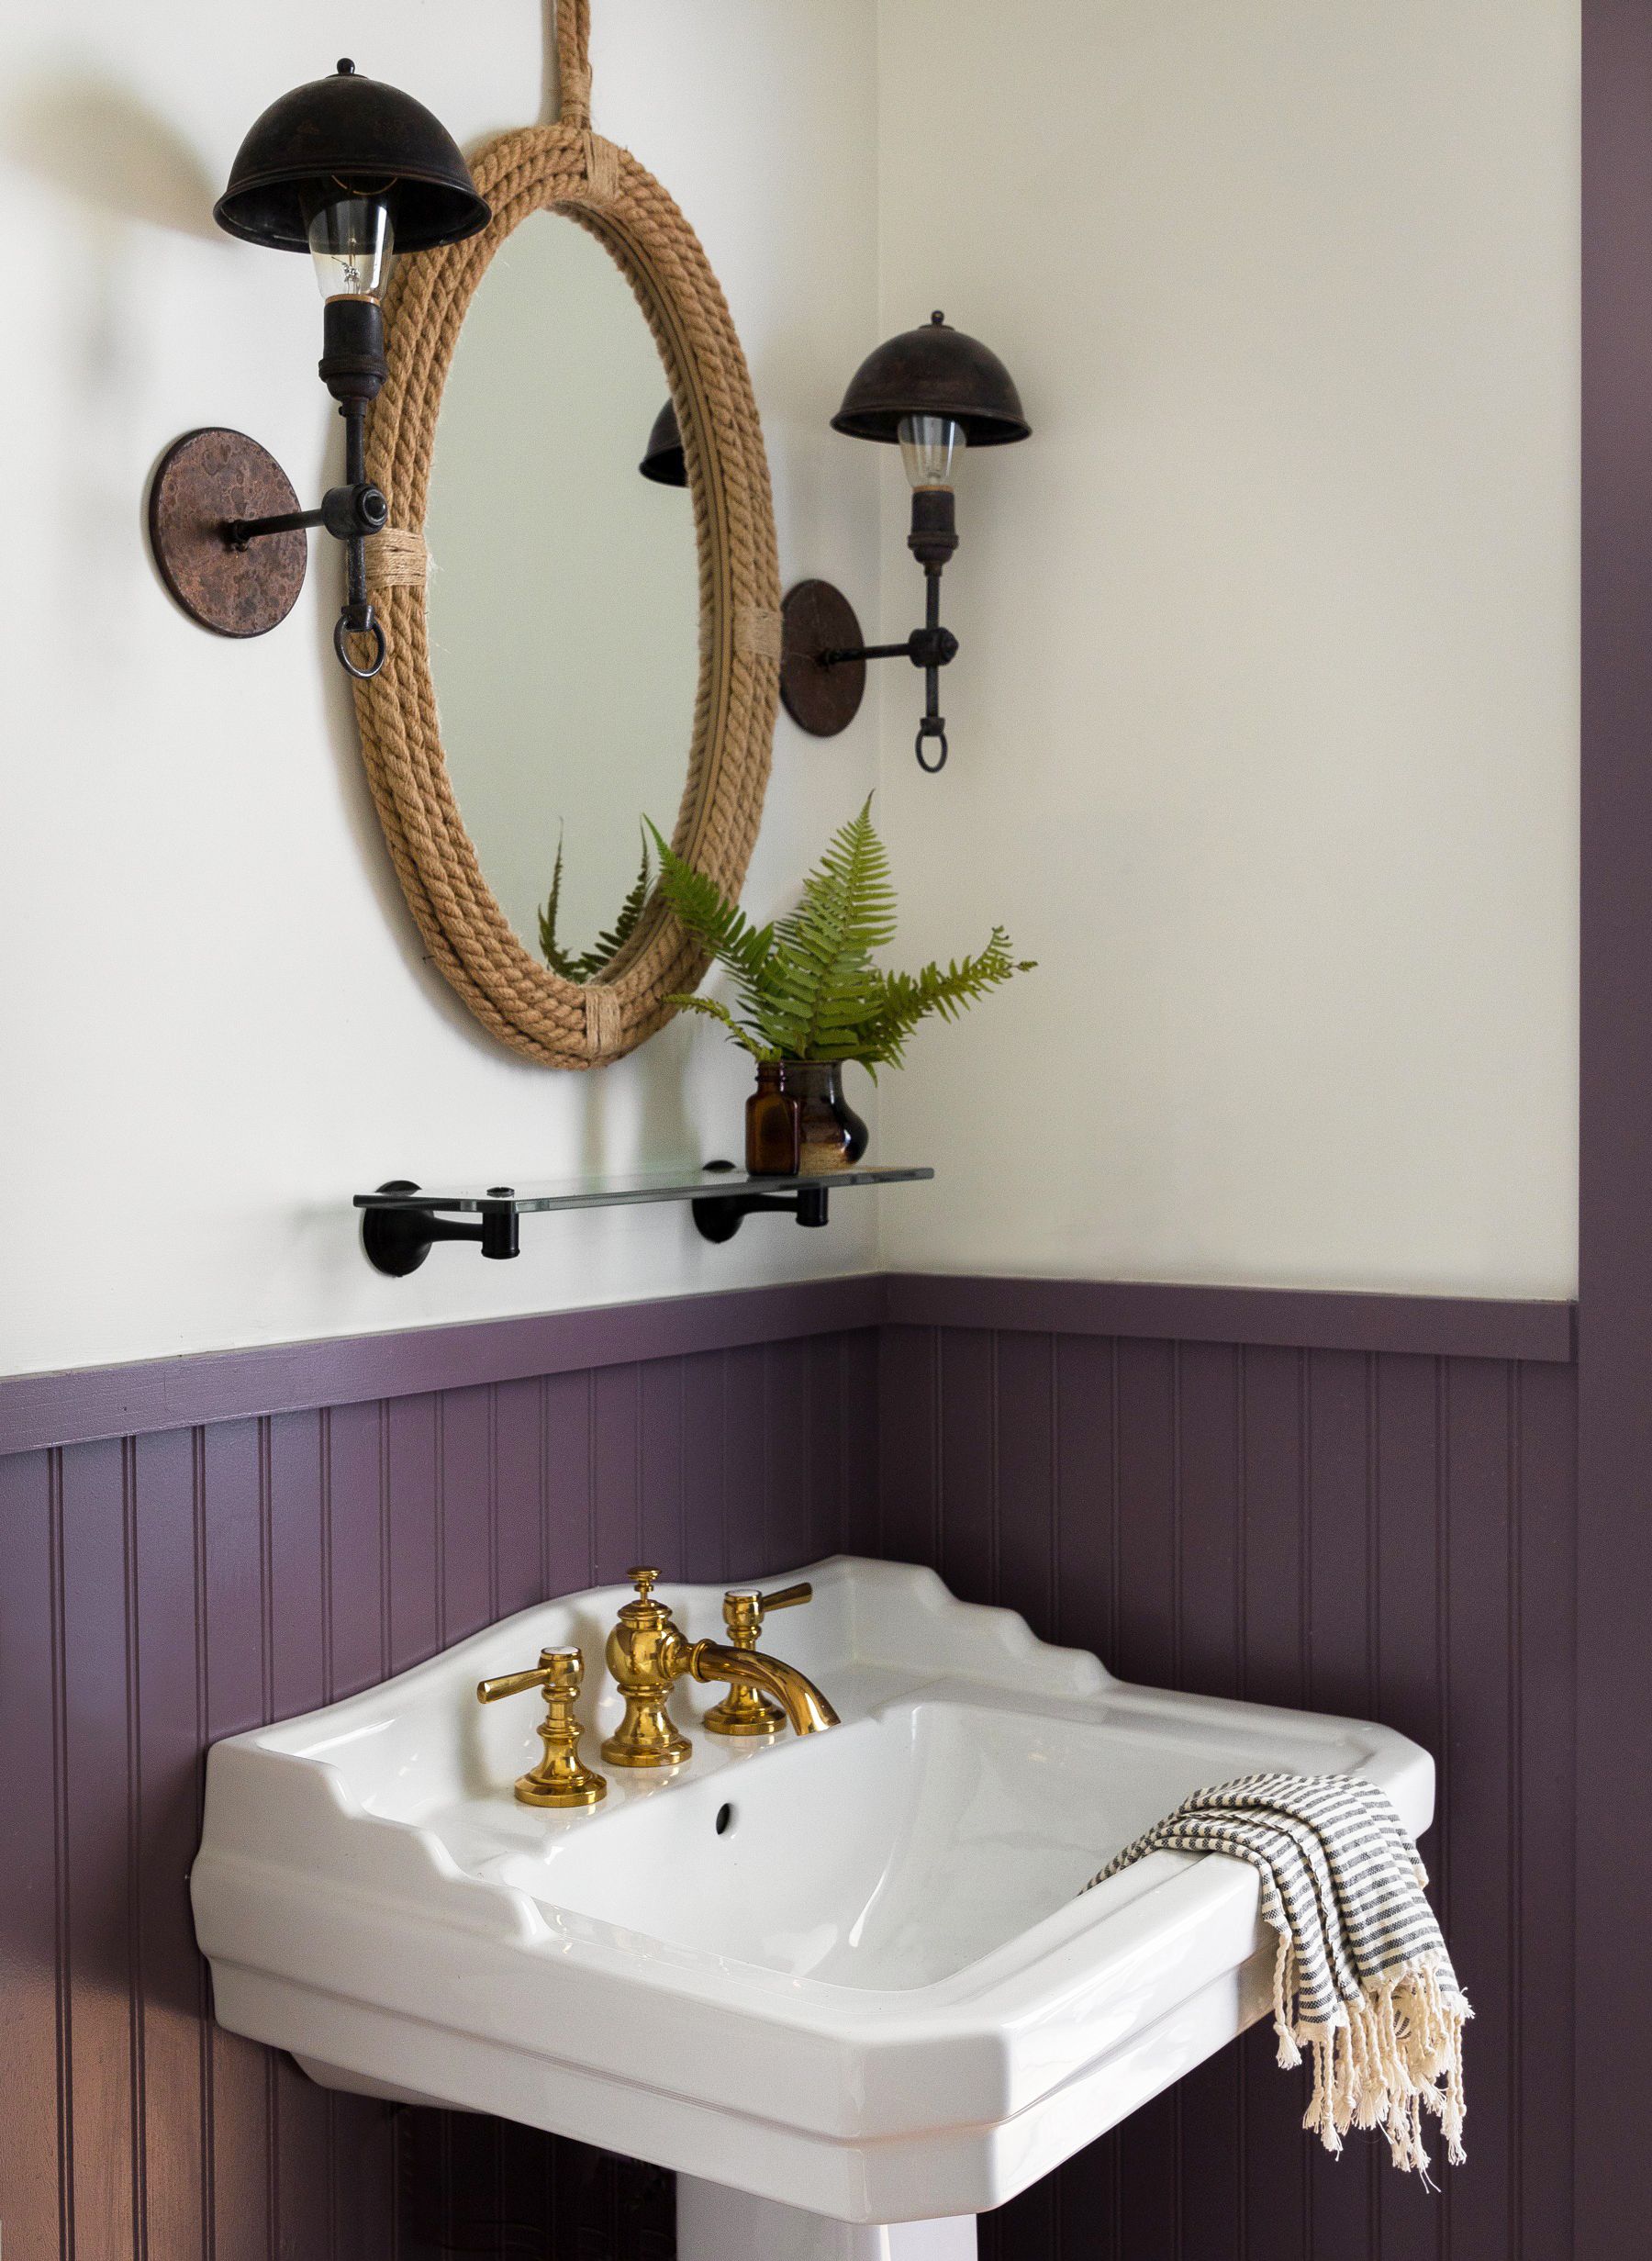 28 Stylish Bathroom Shelf Ideas - The Most Clever Bathroom Storage